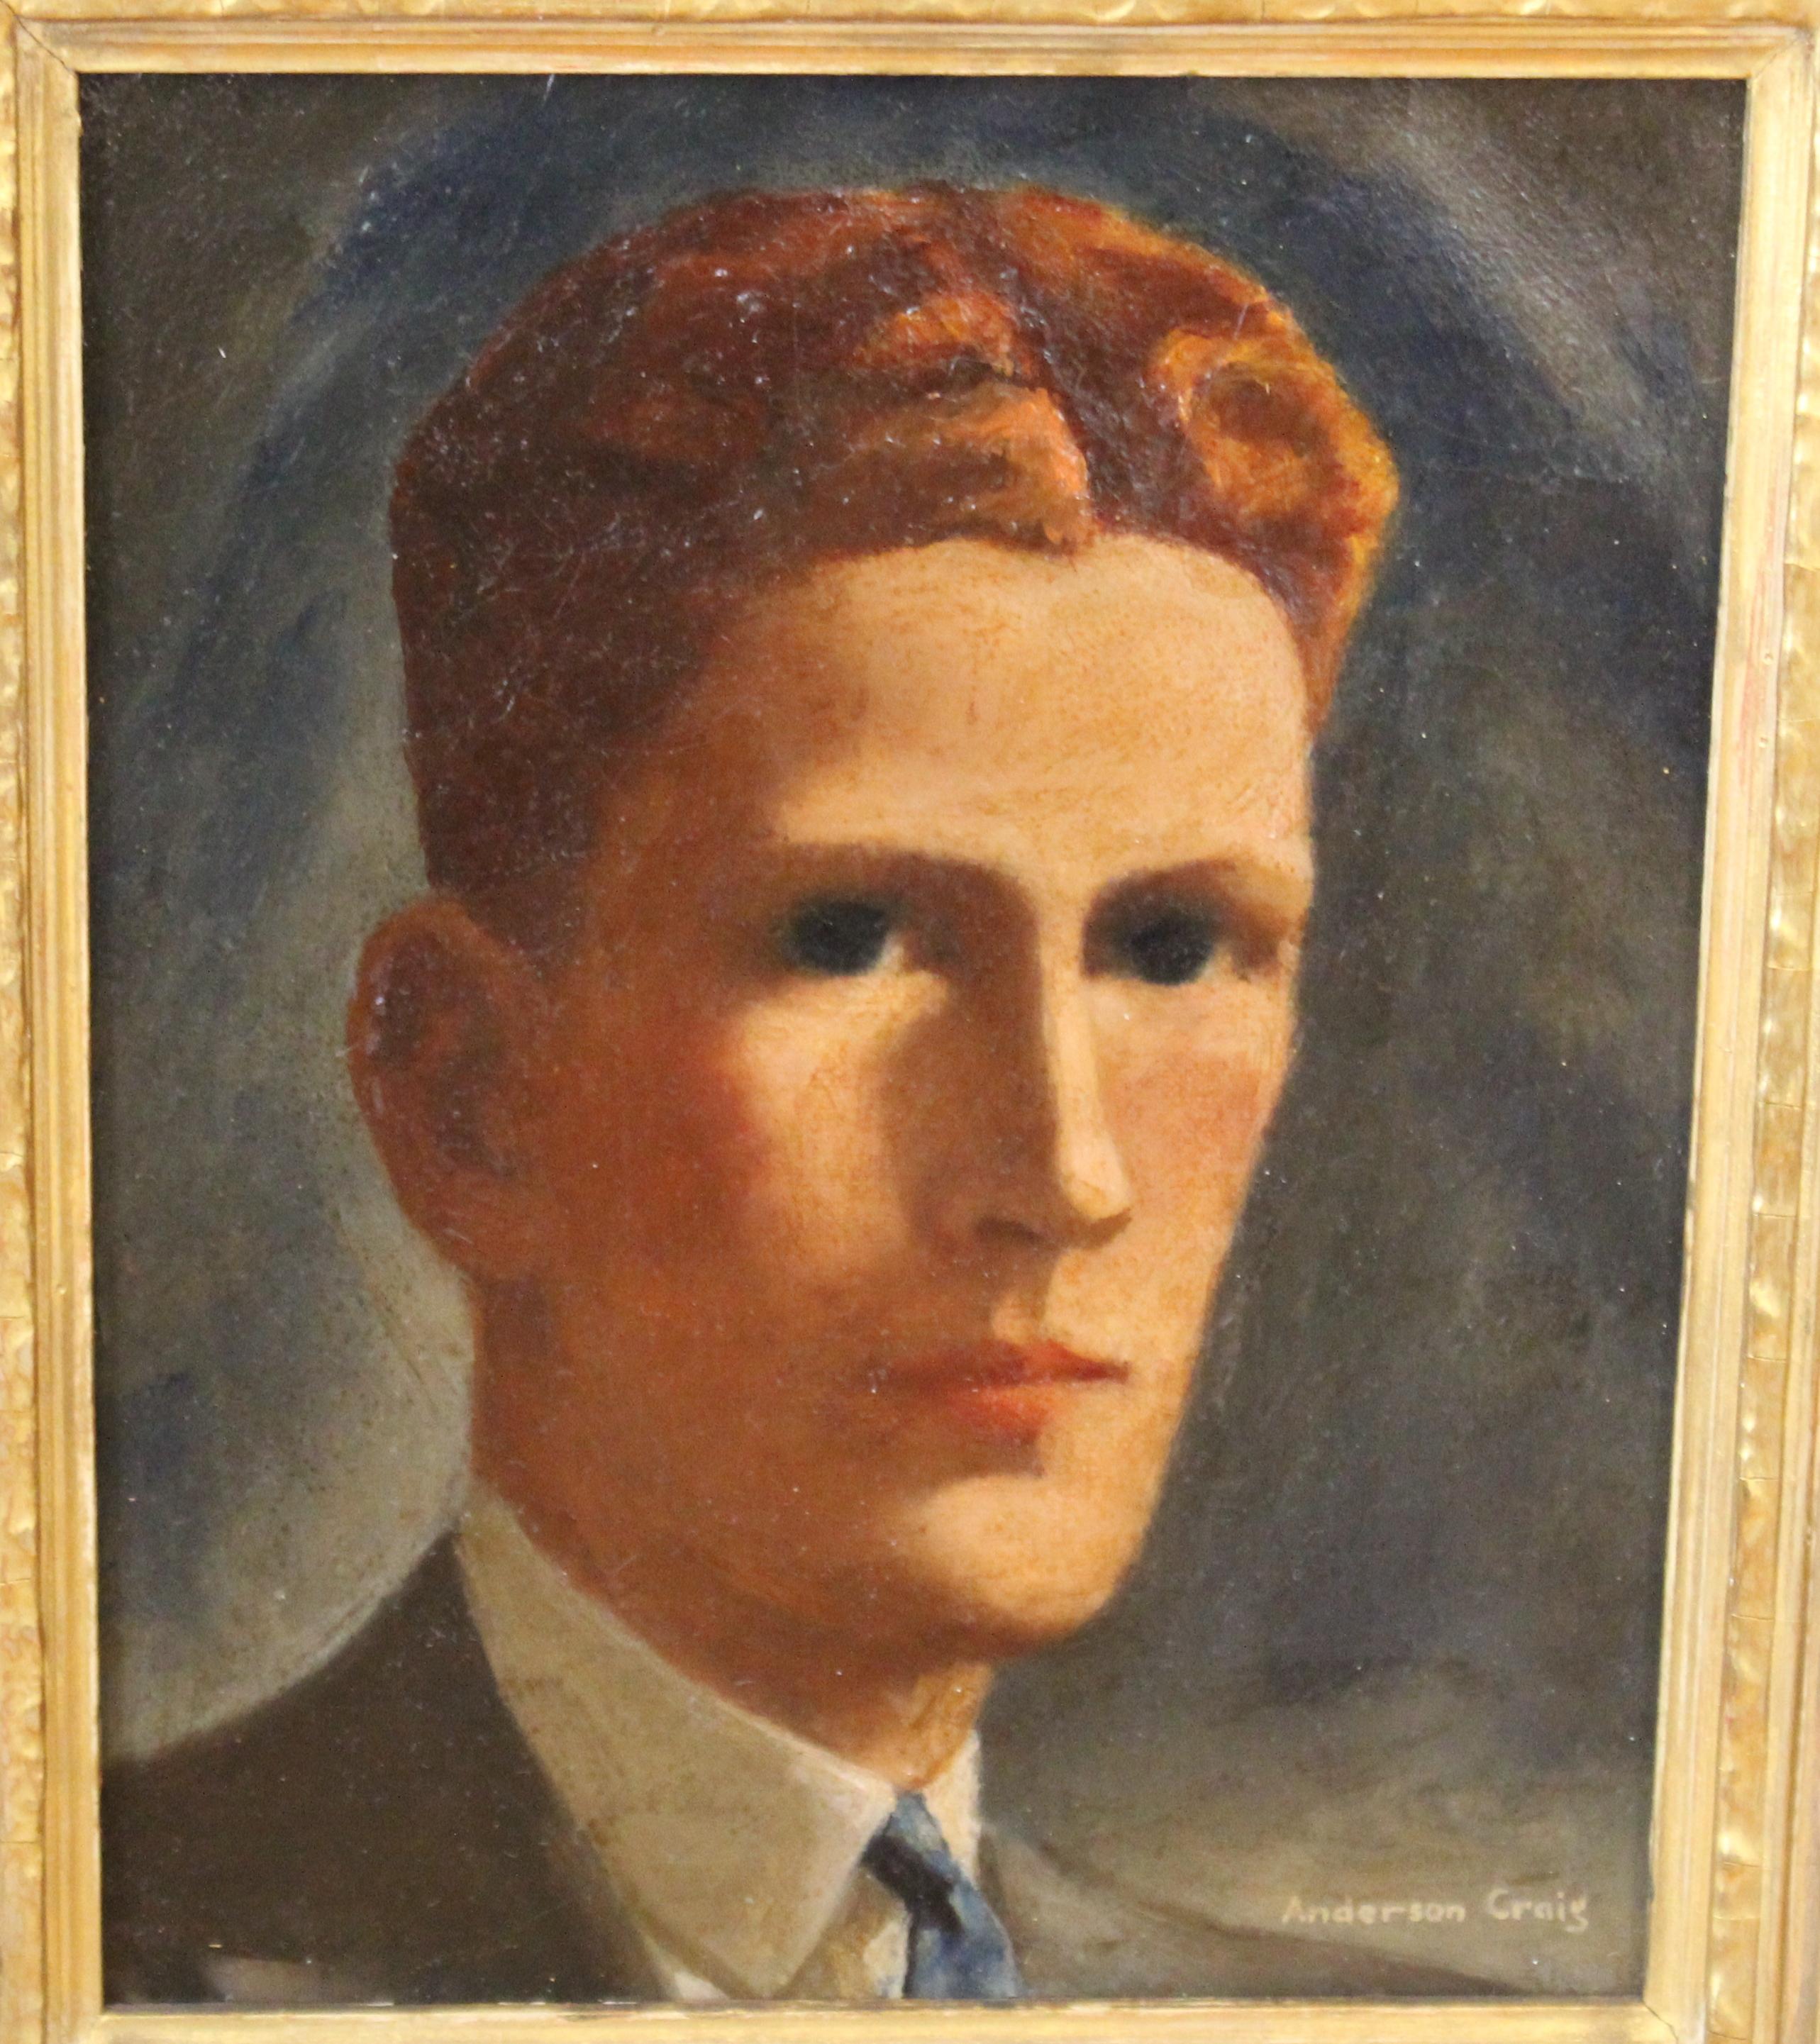 Portrait d'un jeune homme aux cheveux roux, de style gothique américain, peint à l'huile sur toile. La pièce a été créée par Anderson Craig (Américain né en 1904) dans les années 1930 et est signée par l'artiste dans le coin inférieur